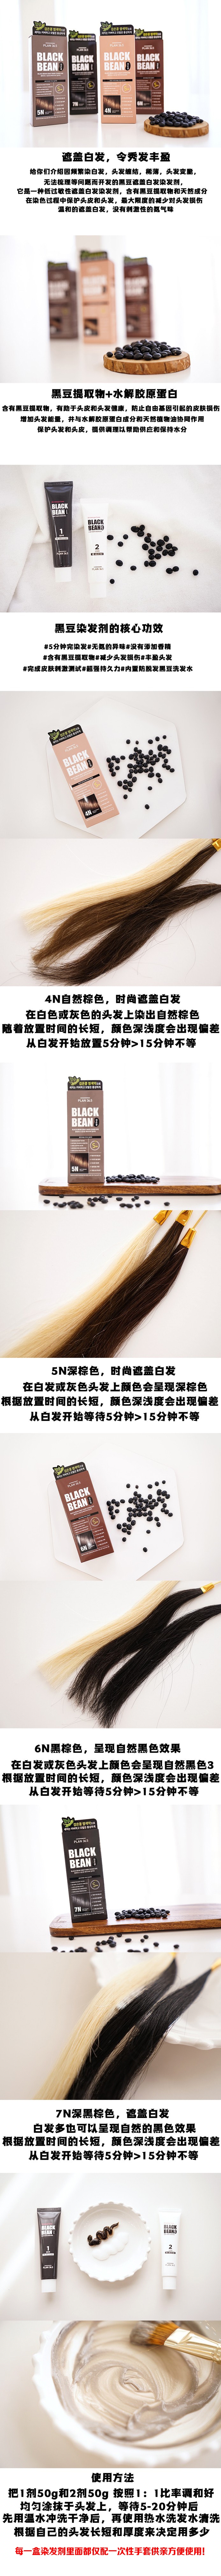 韓國 【黑豆染髮】Plan 36.5 黑豆 防脫髮滋潤染髮劑 可染白髮 #6N 深棕色